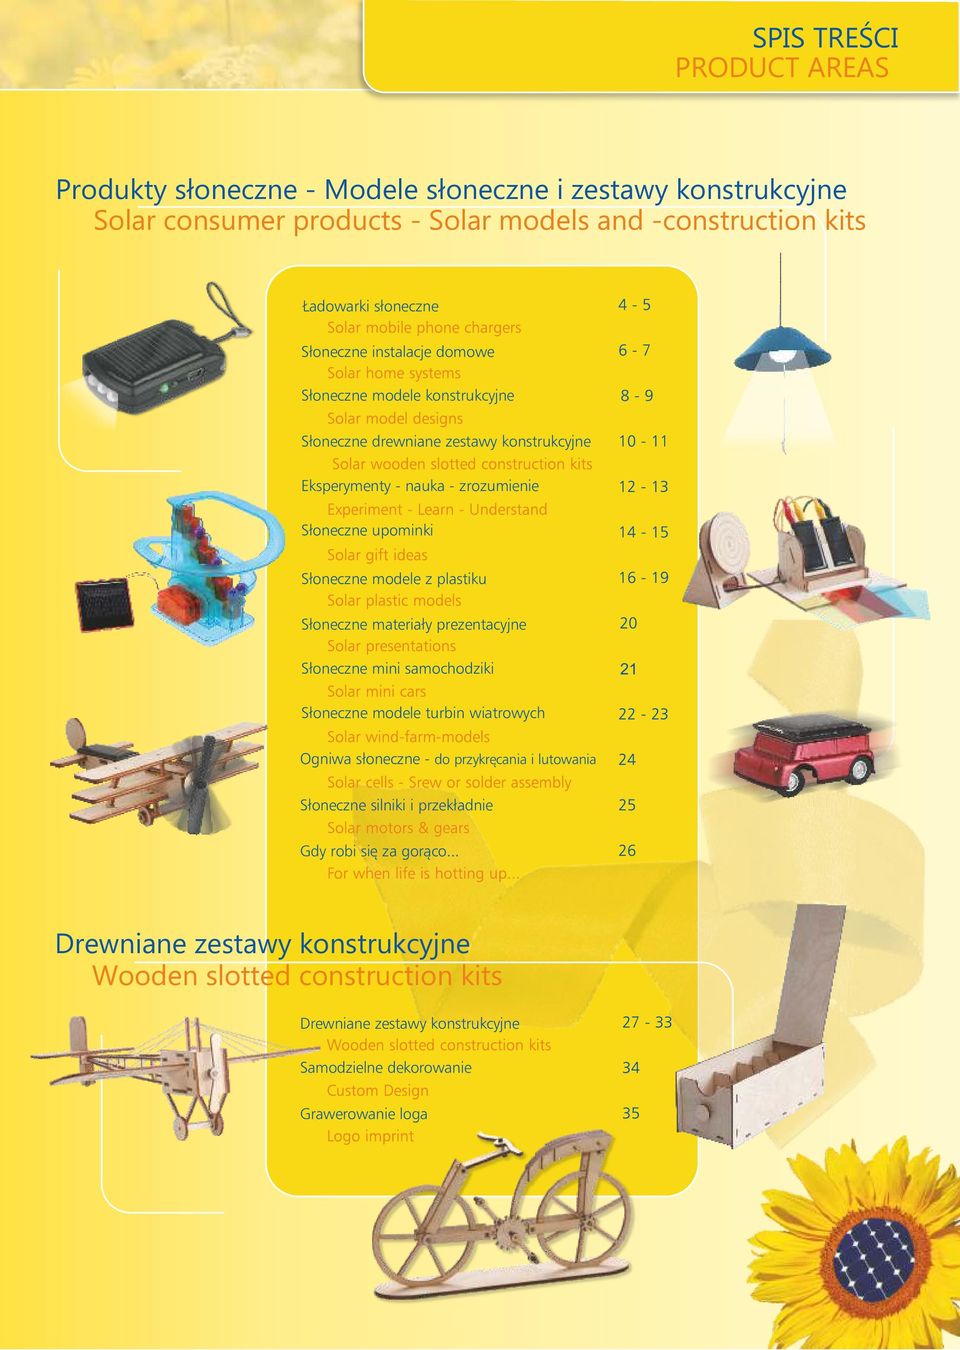 plastiku Słoneczne materiały prezentacyjne Słoneczne mini samochodziki 21 Słoneczne modele turbin wiatrowych Ogniwa słoneczne - do przykręcania i lutowania Słoneczne silniki